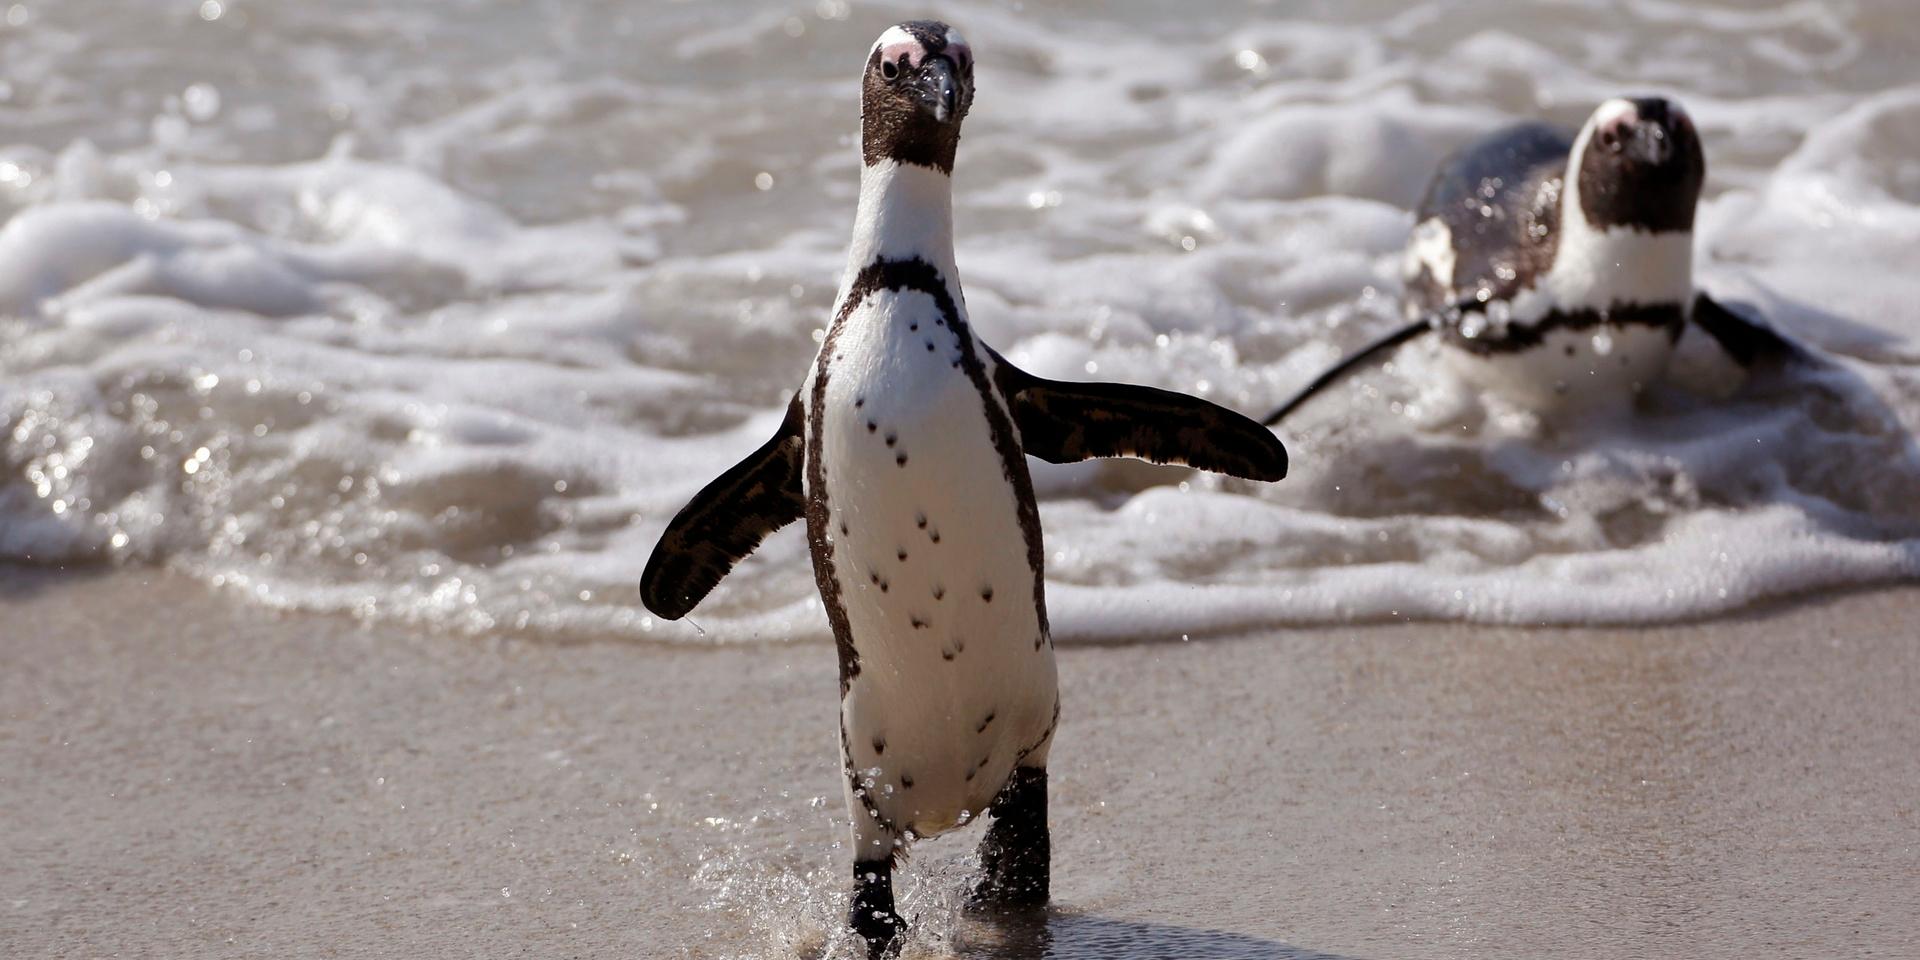 Enligt The Guardian har 63 pingviner hittats döda på en strand utanför Kapstaden. Bild: AP Photo/Schalk van Zuydam.